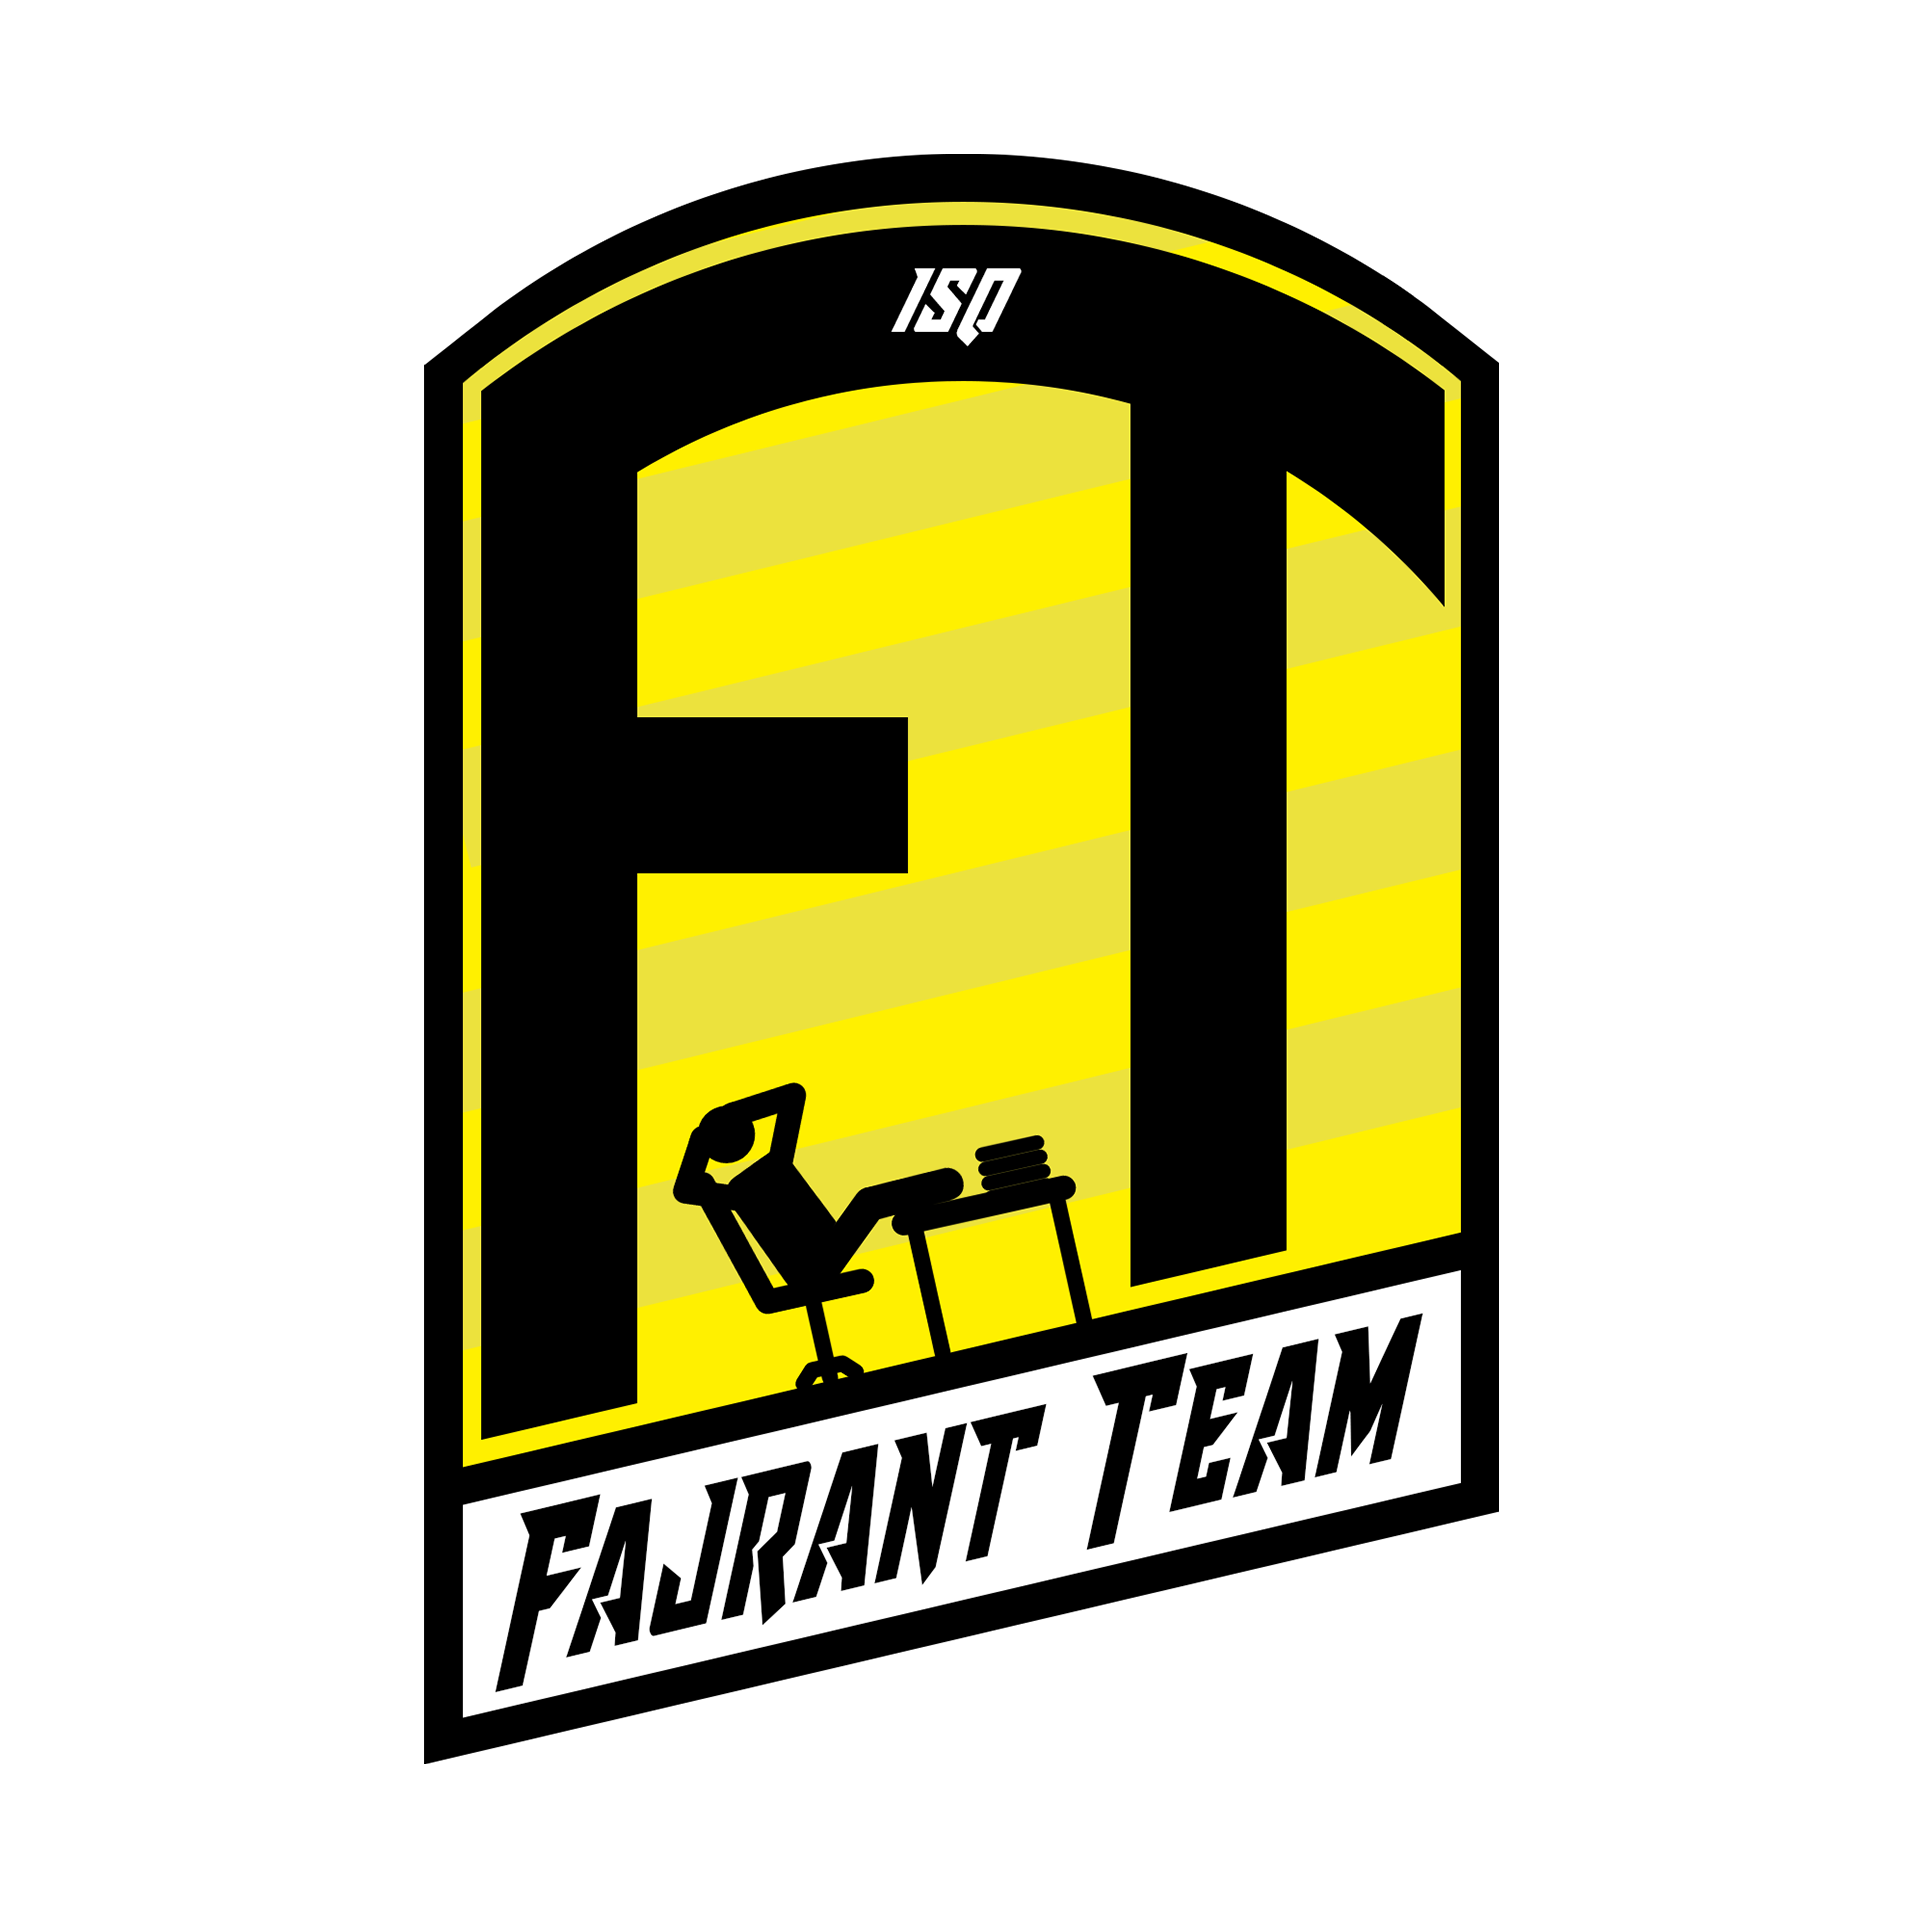 Bad Company – Fajrant Team 39:51. Fajranci mistrzami ISQ